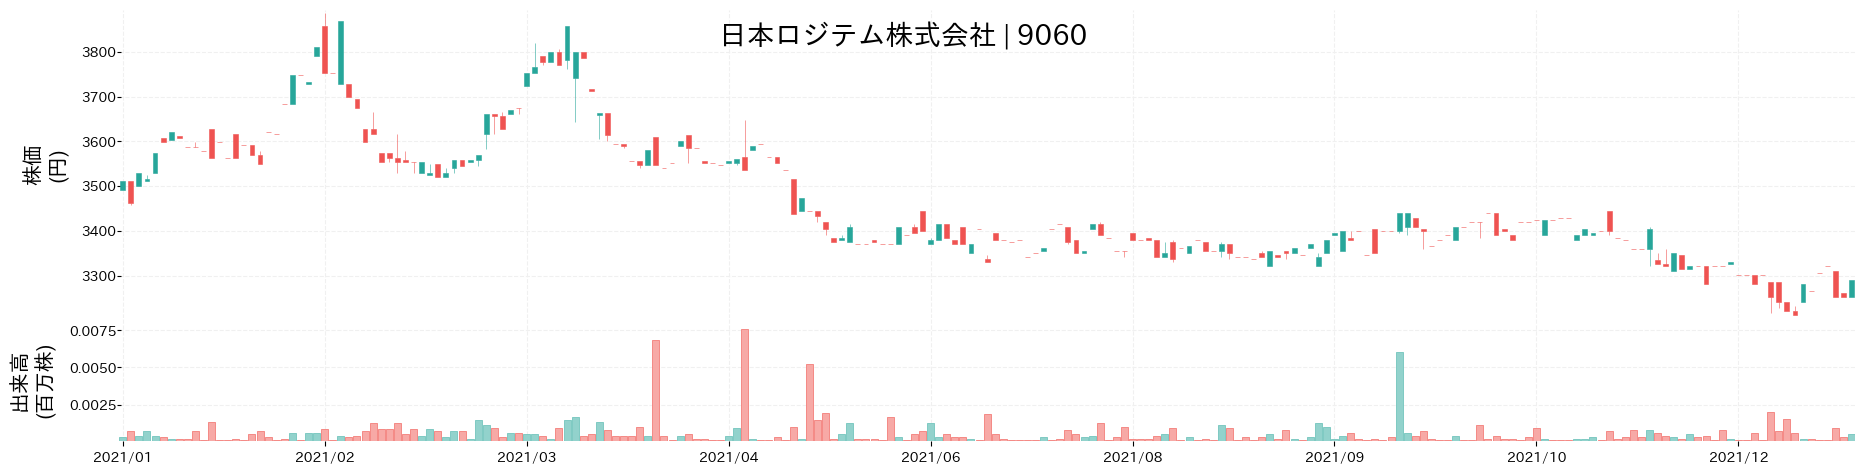 日本ロジテムの株価推移(2021)